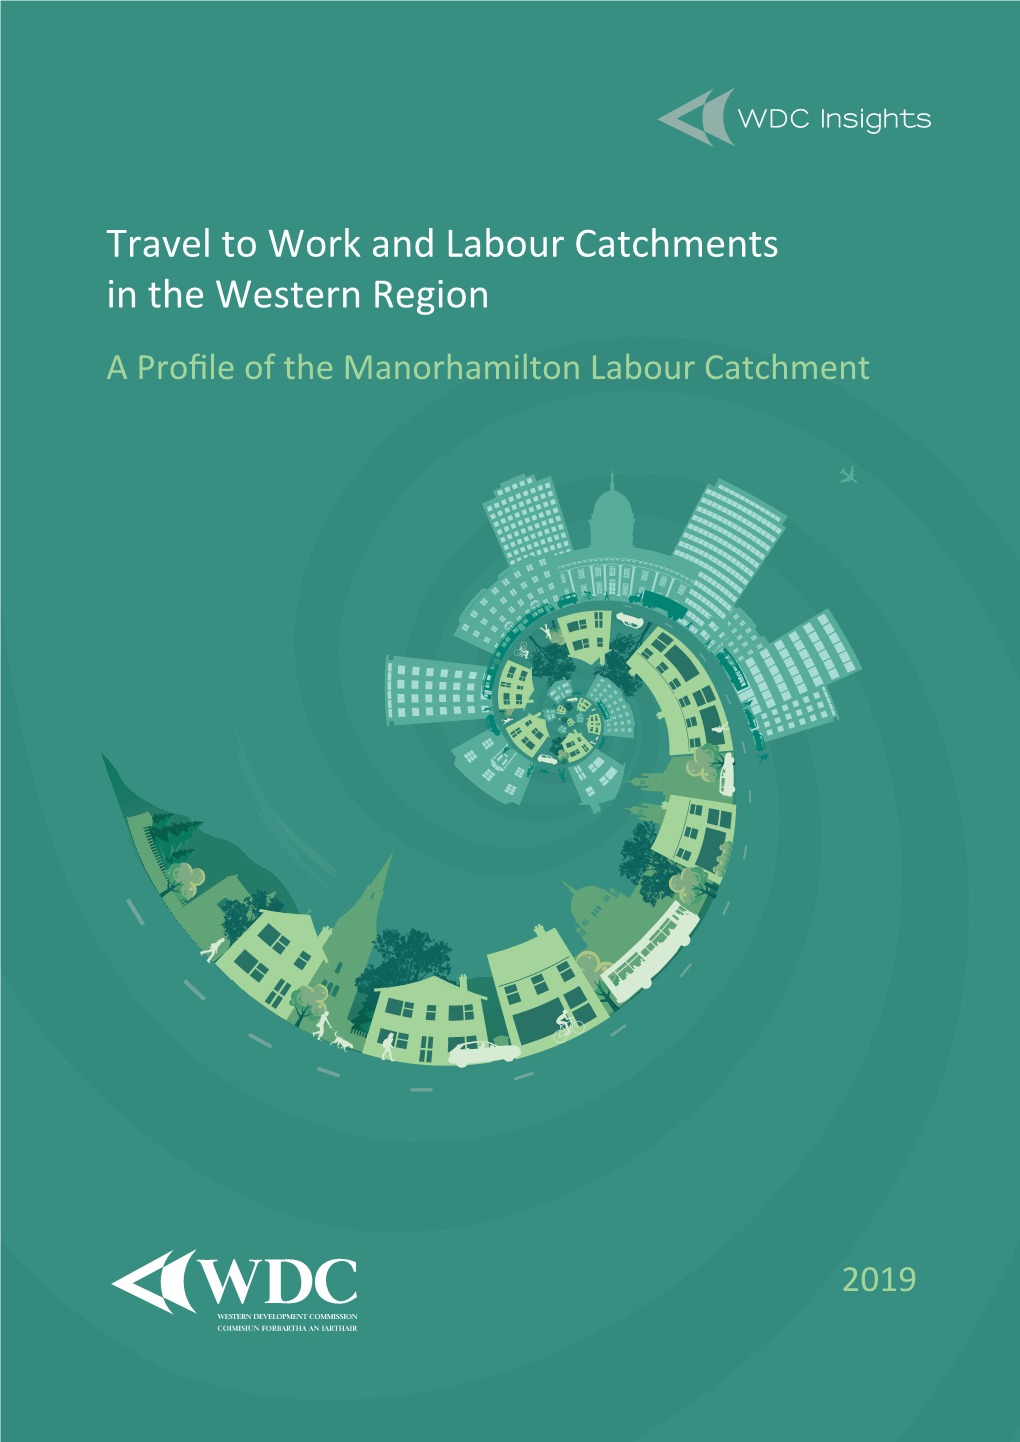 Manorhamilton Labour Catchment